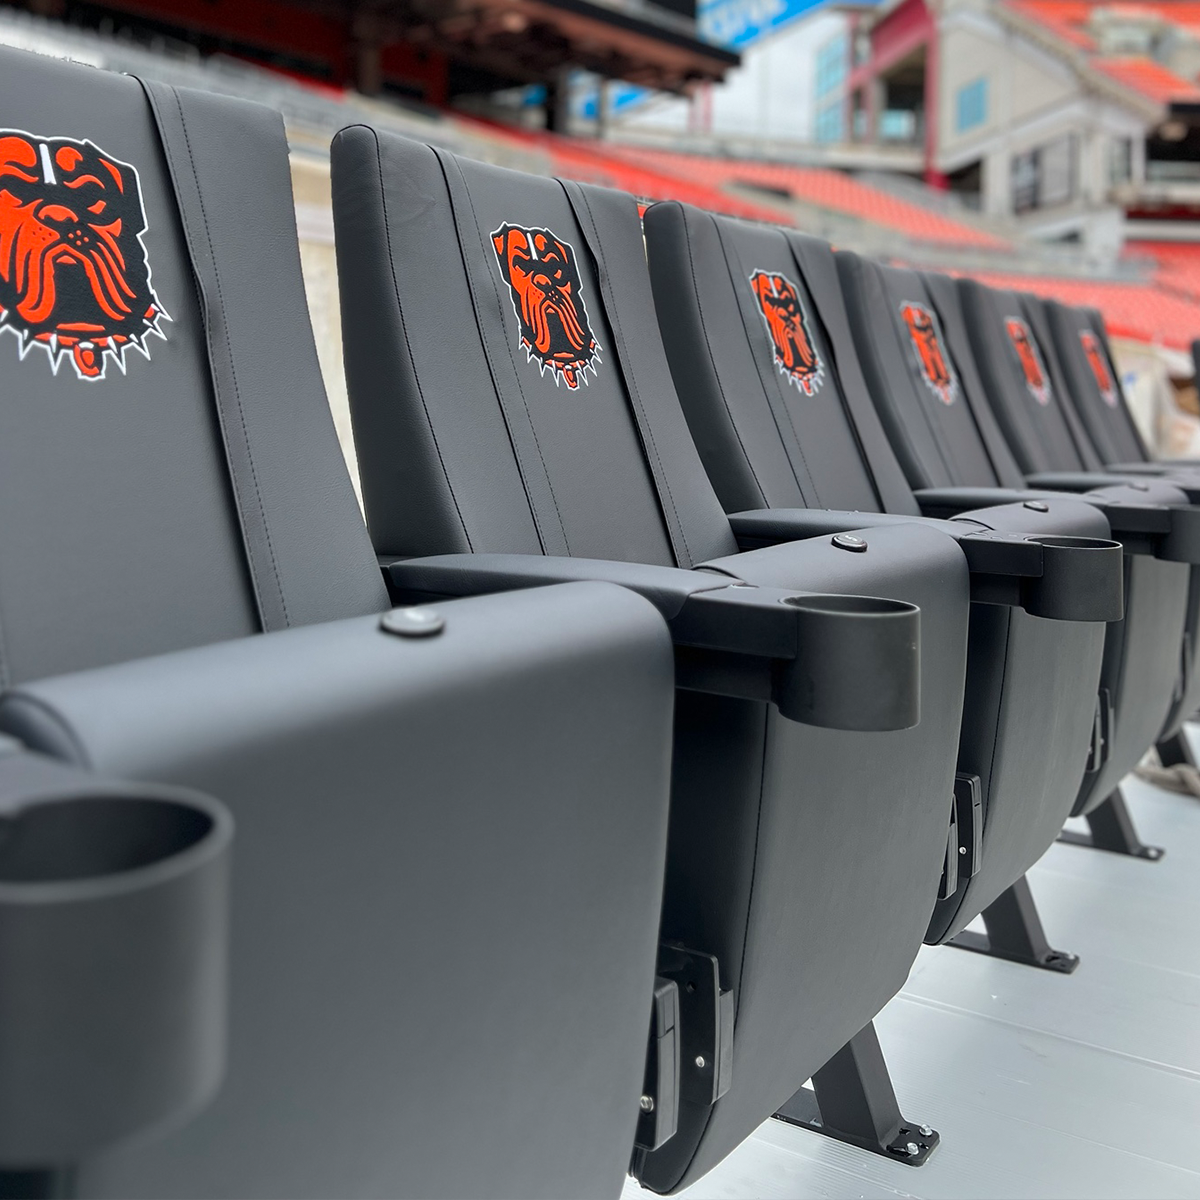 SuiteMax 3.5 VIP Seats with Philadelphia 76ers GC Logo